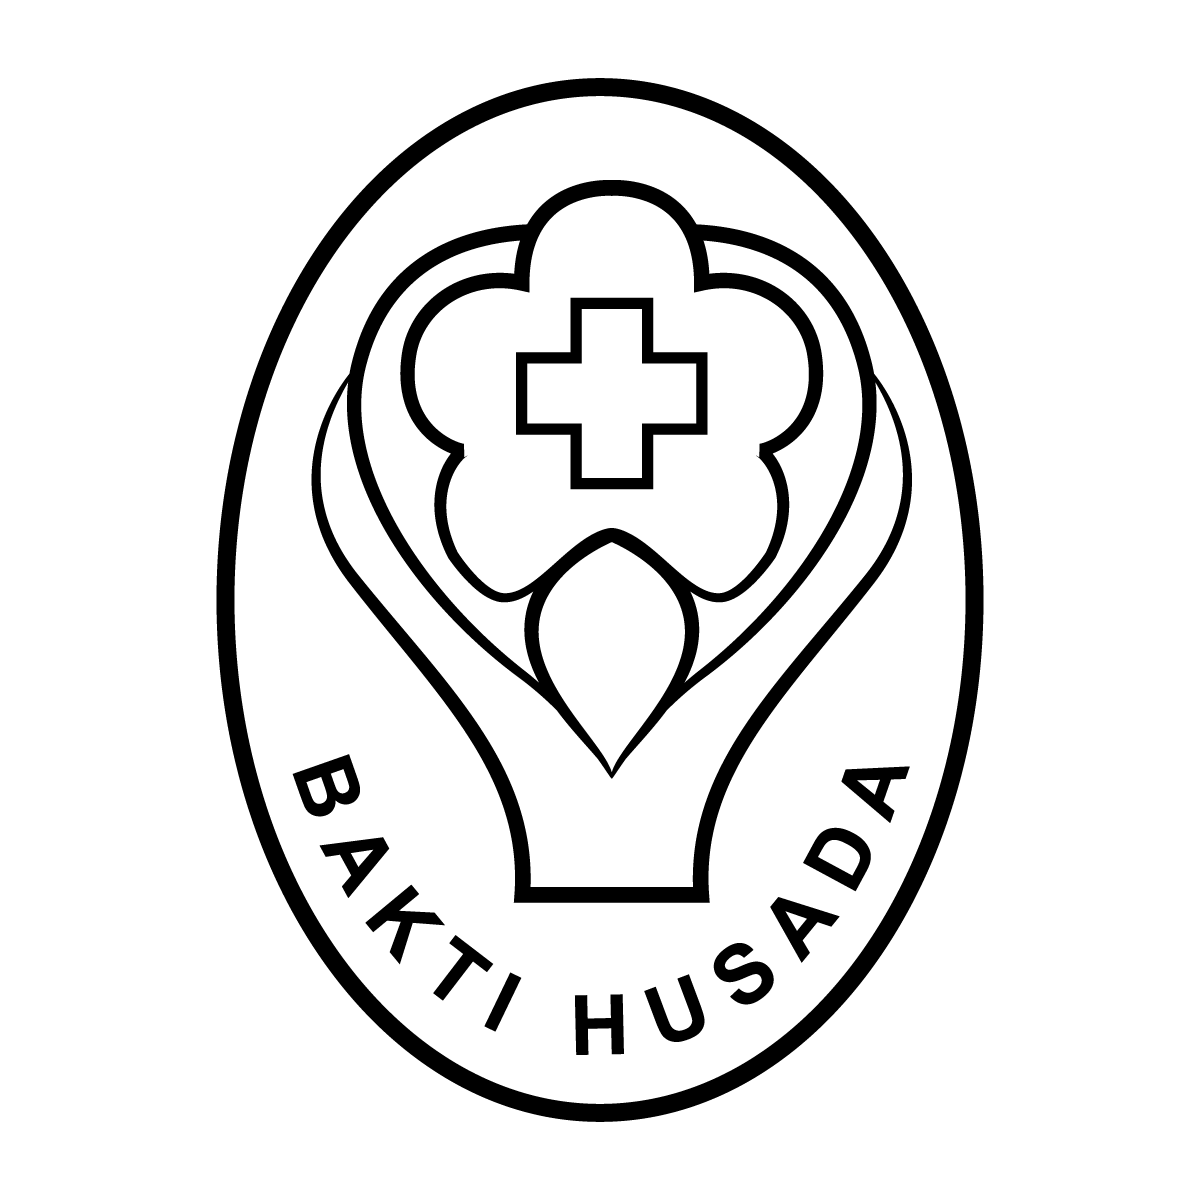 Logo Bakti Husada, Lambang Kesehatan untuk Upaya Kesehatan - 237 Design